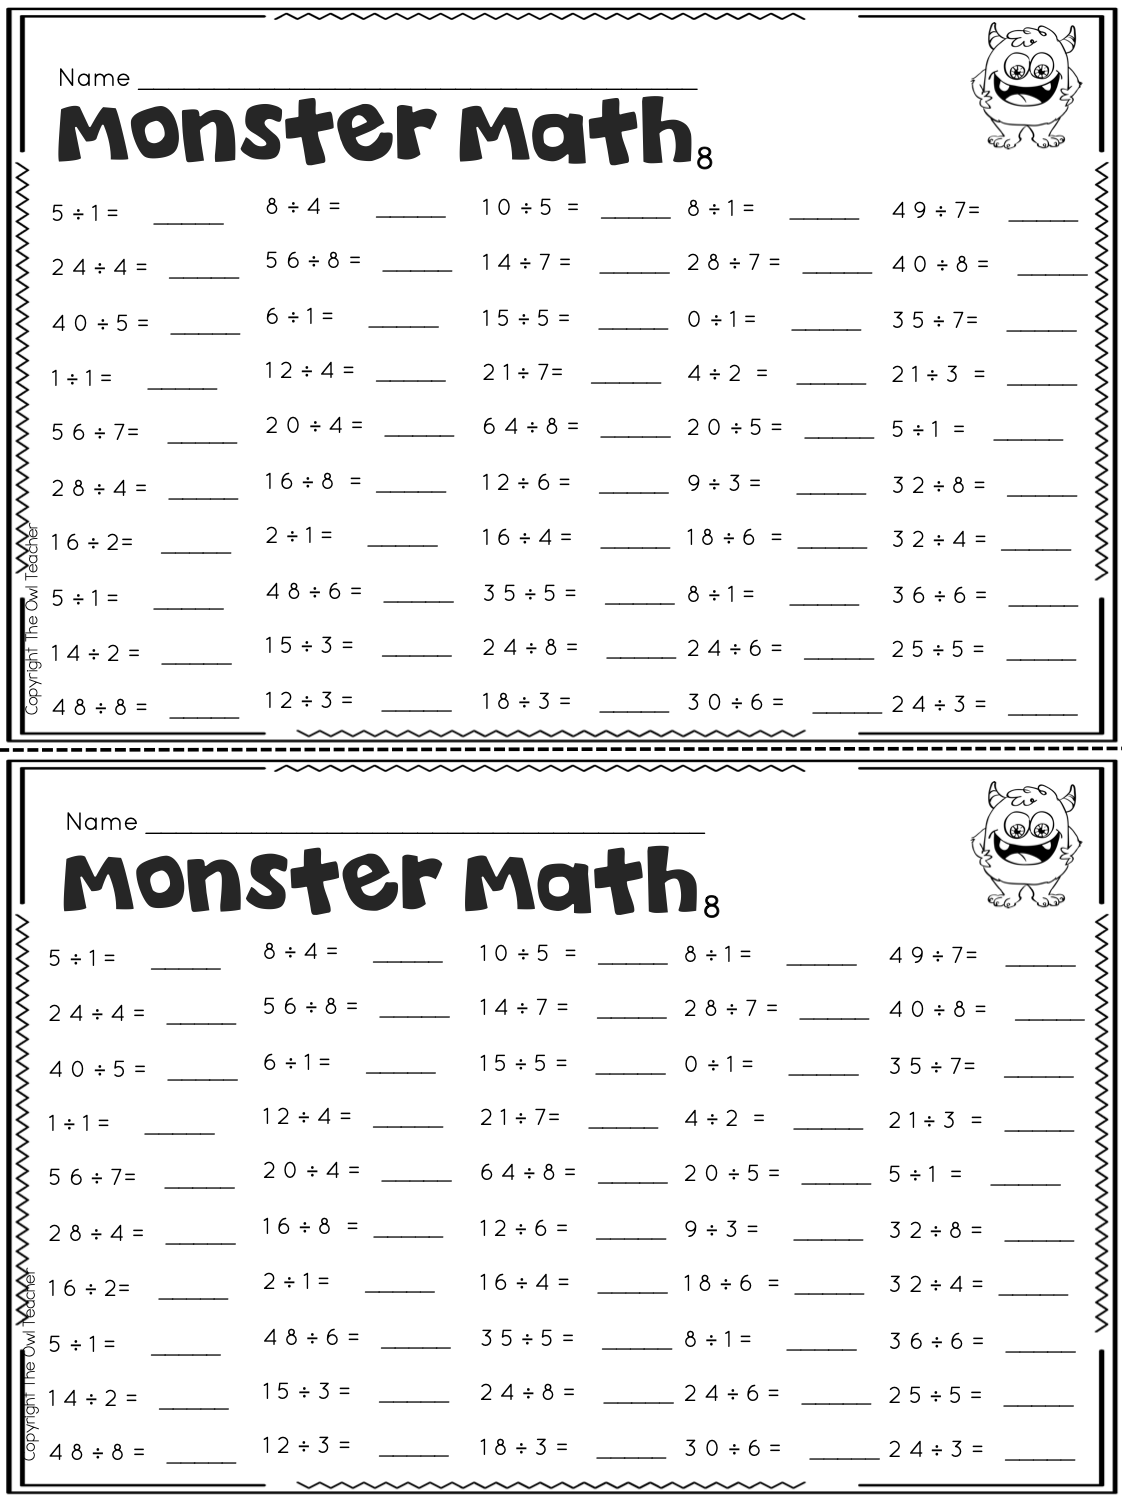 Multiplication Fluency Practice Worksheets Printable Worksheets